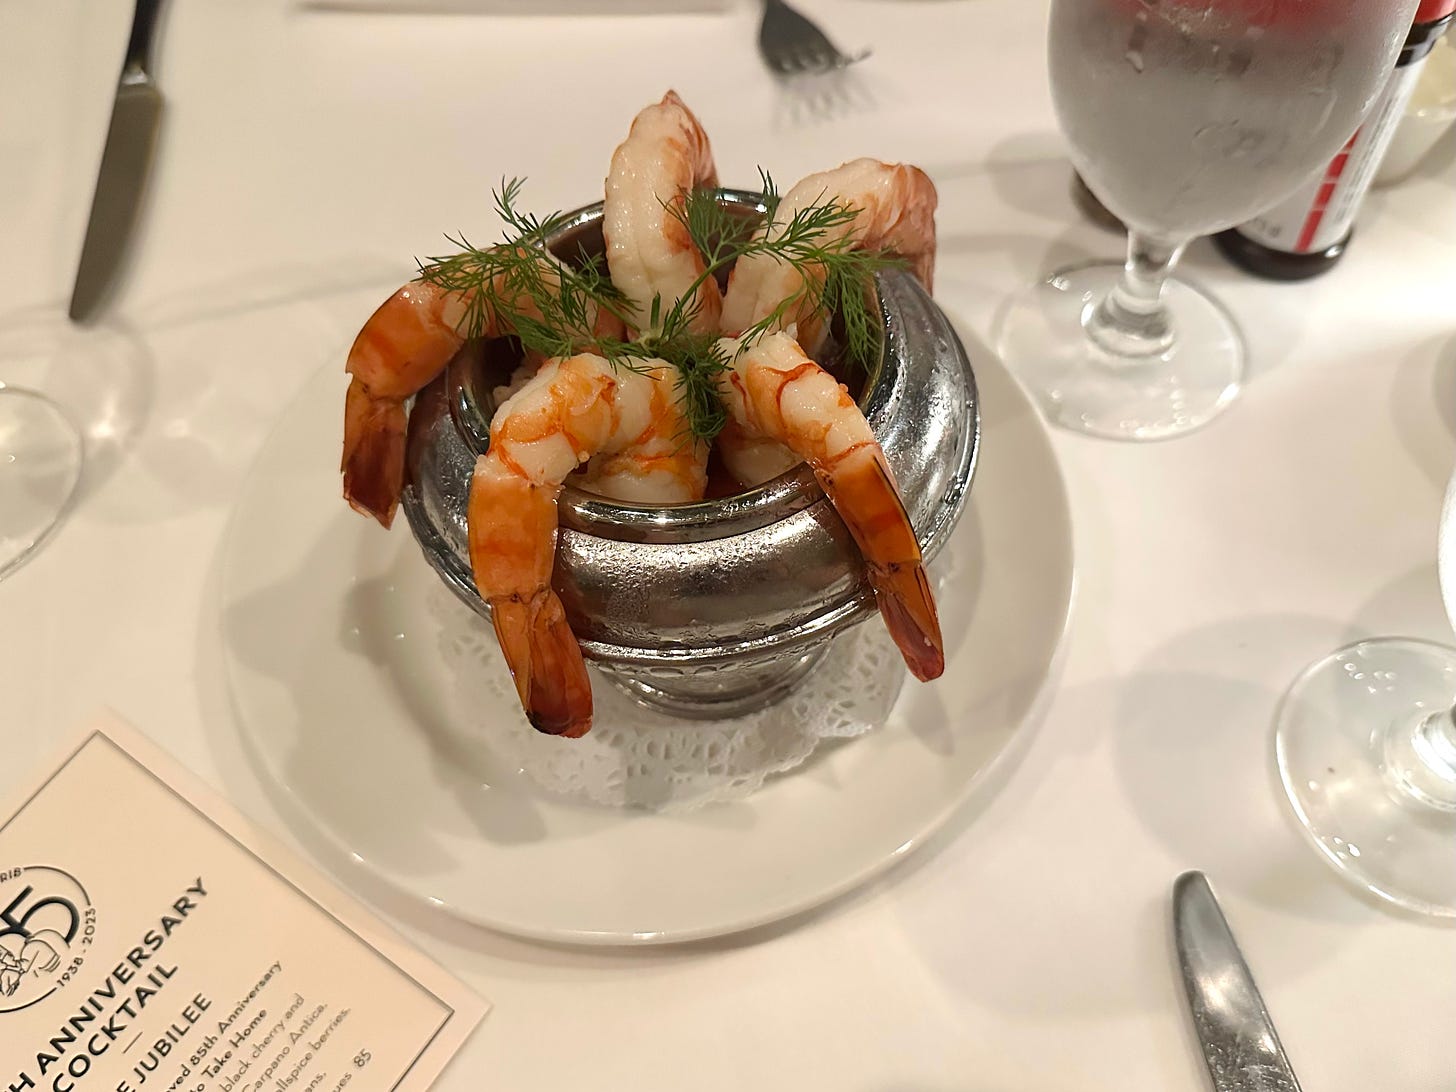 Lawry's shrimp cocktail